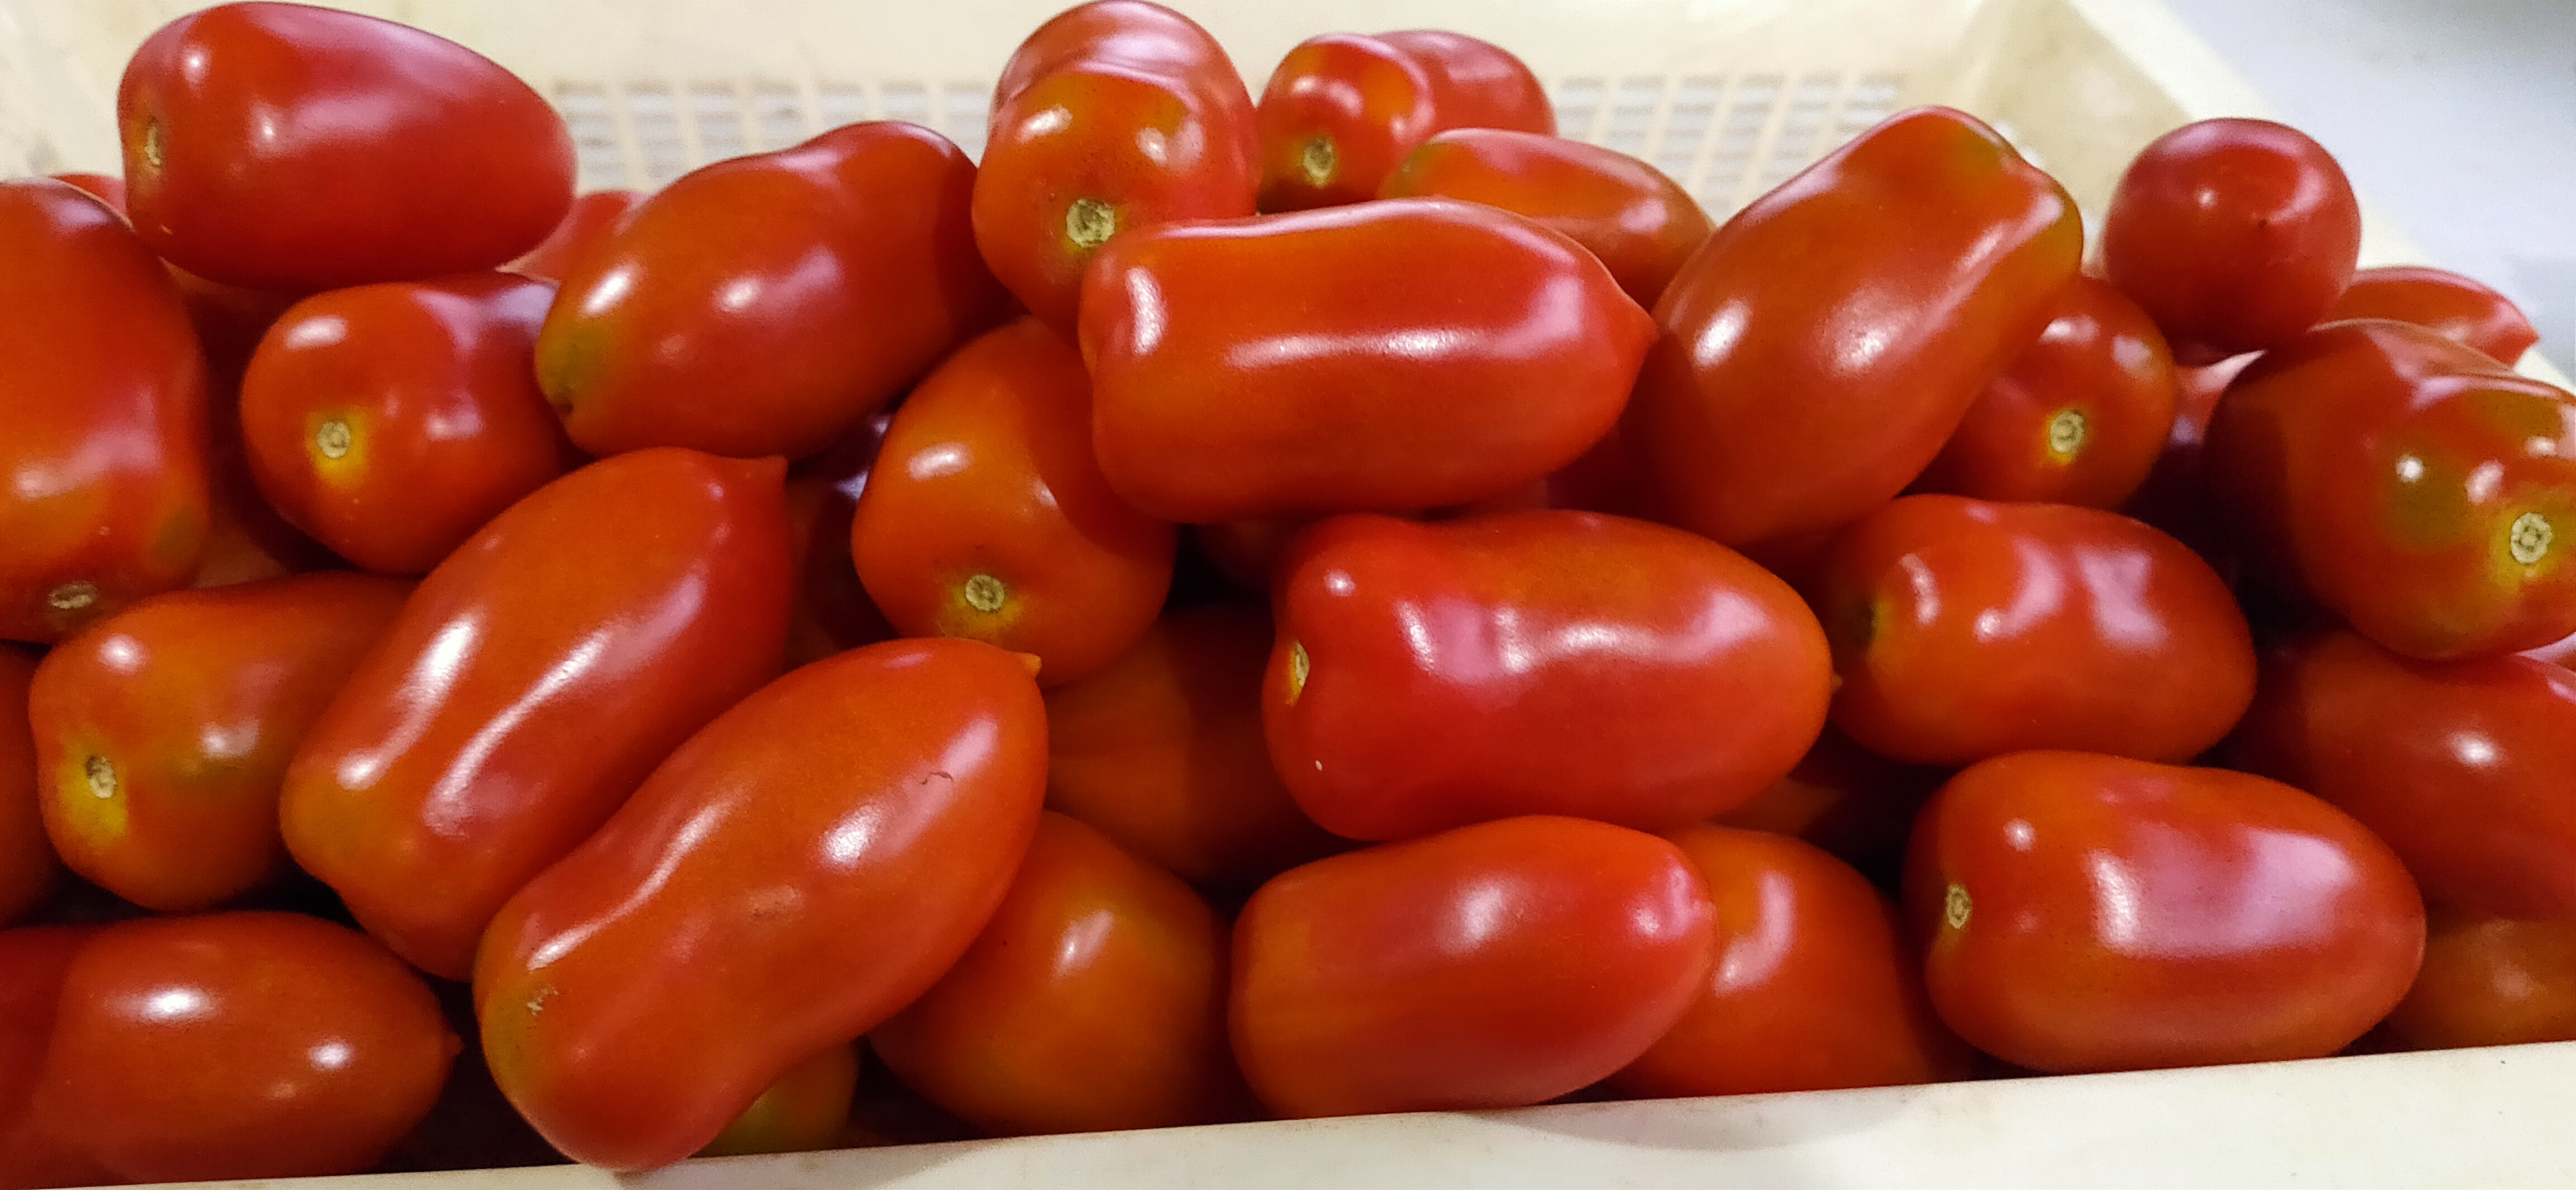 サンマルツァーノリゼルバ[旨味が強い調理用トマト] トマト5kg